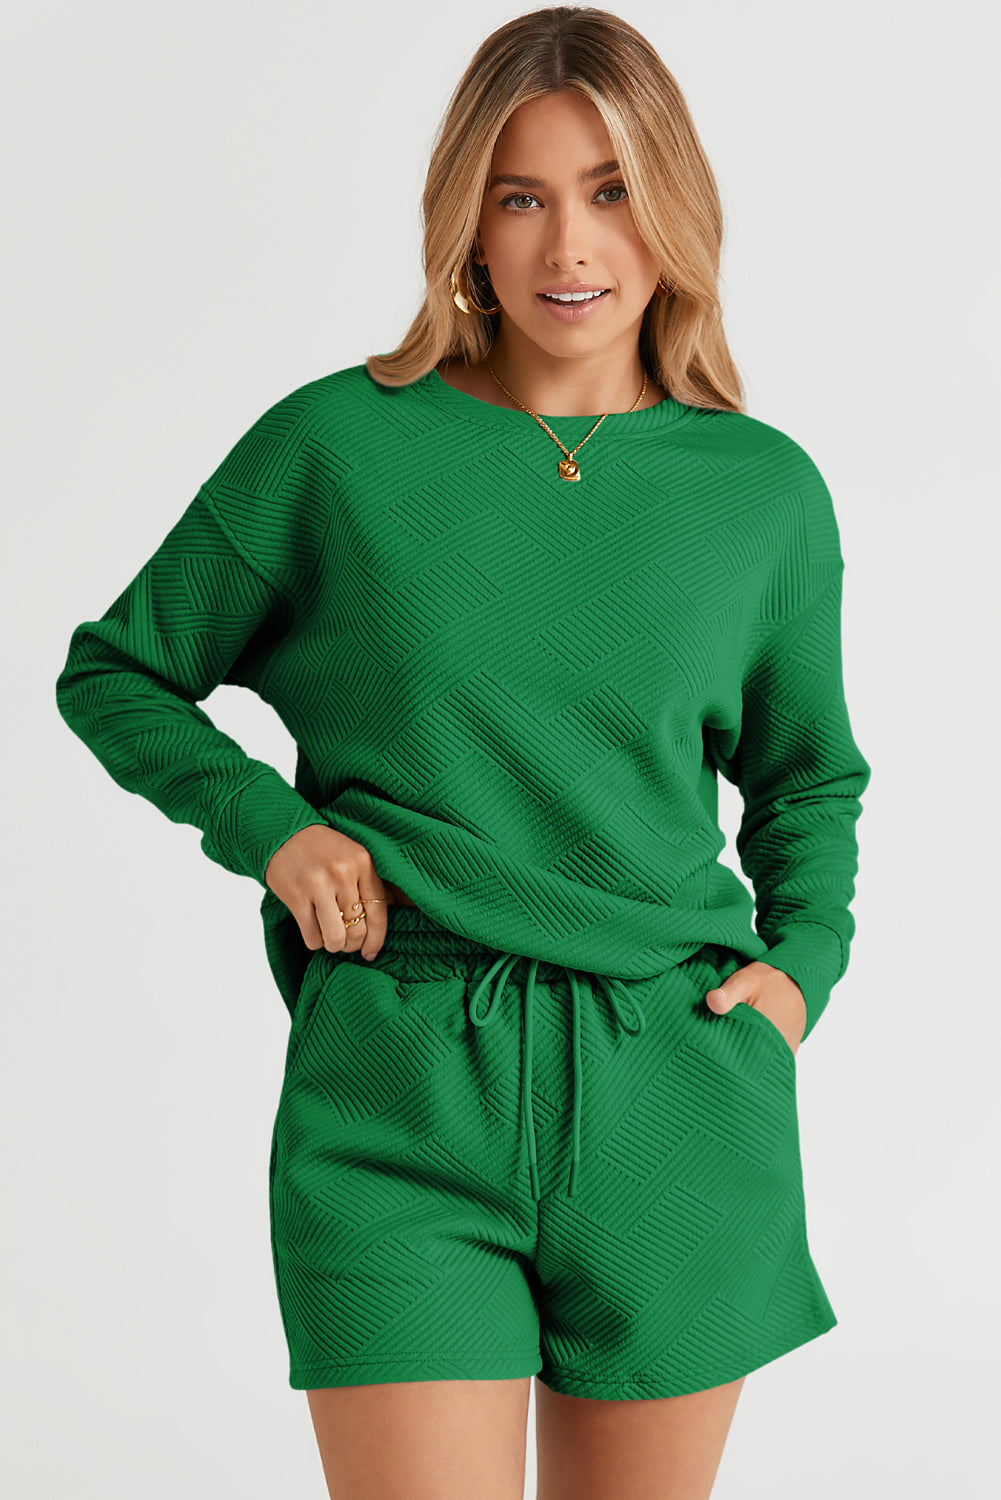 Green Textured Long Sleeve Top and Drawstring Shorts Set